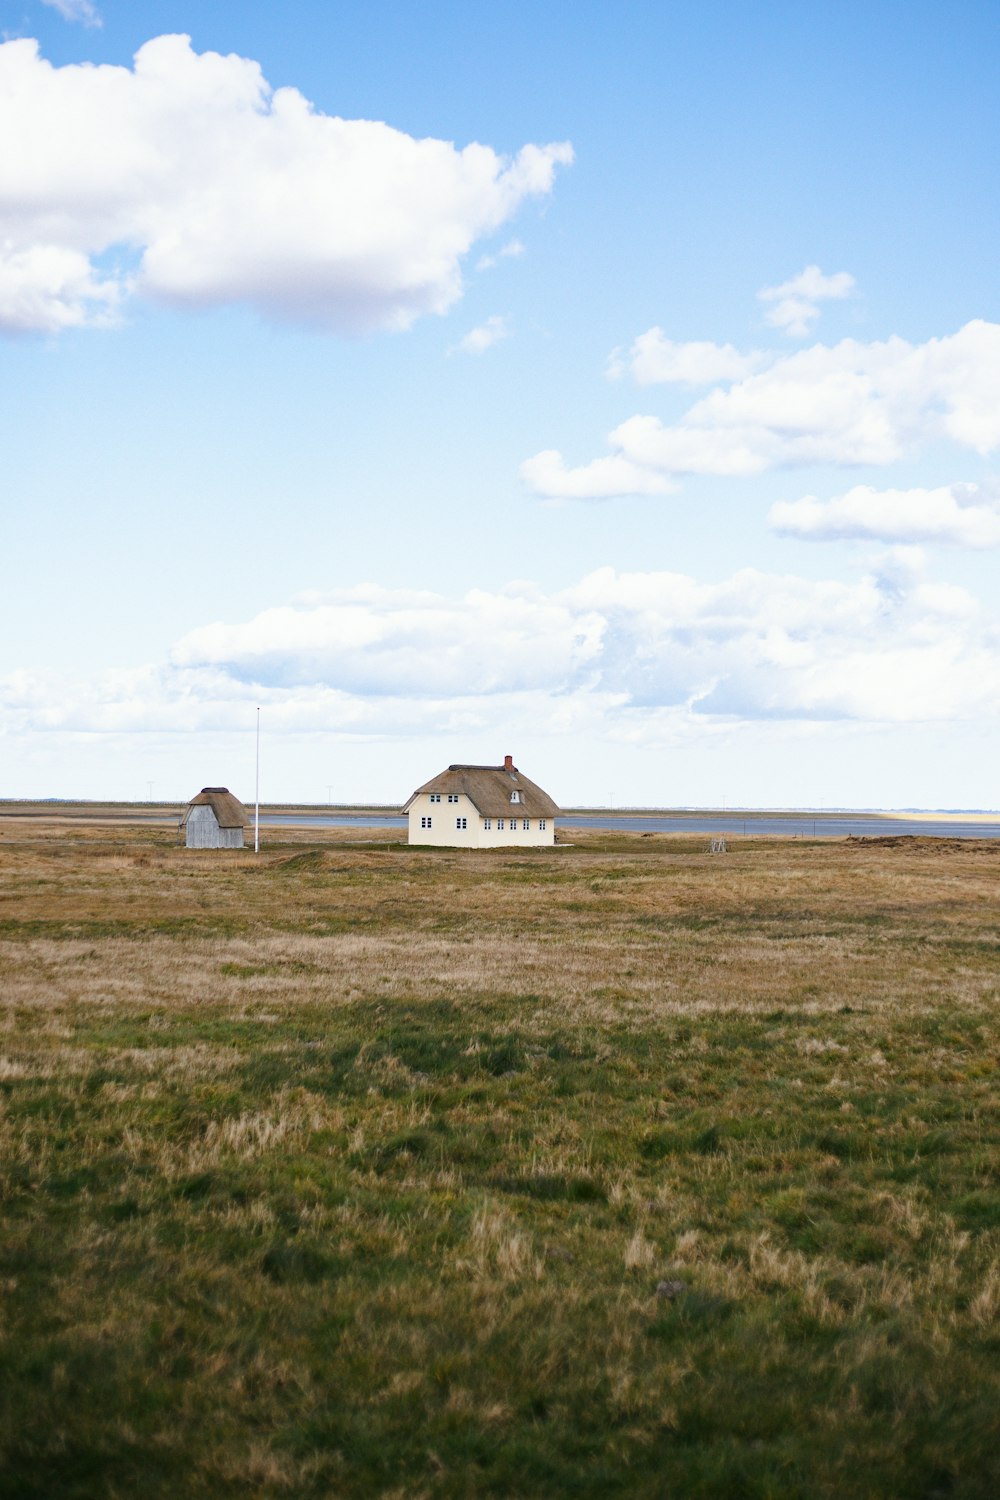 maison blanche et brune sur le champ d’herbe verte sous les nuages blancs pendant la journée